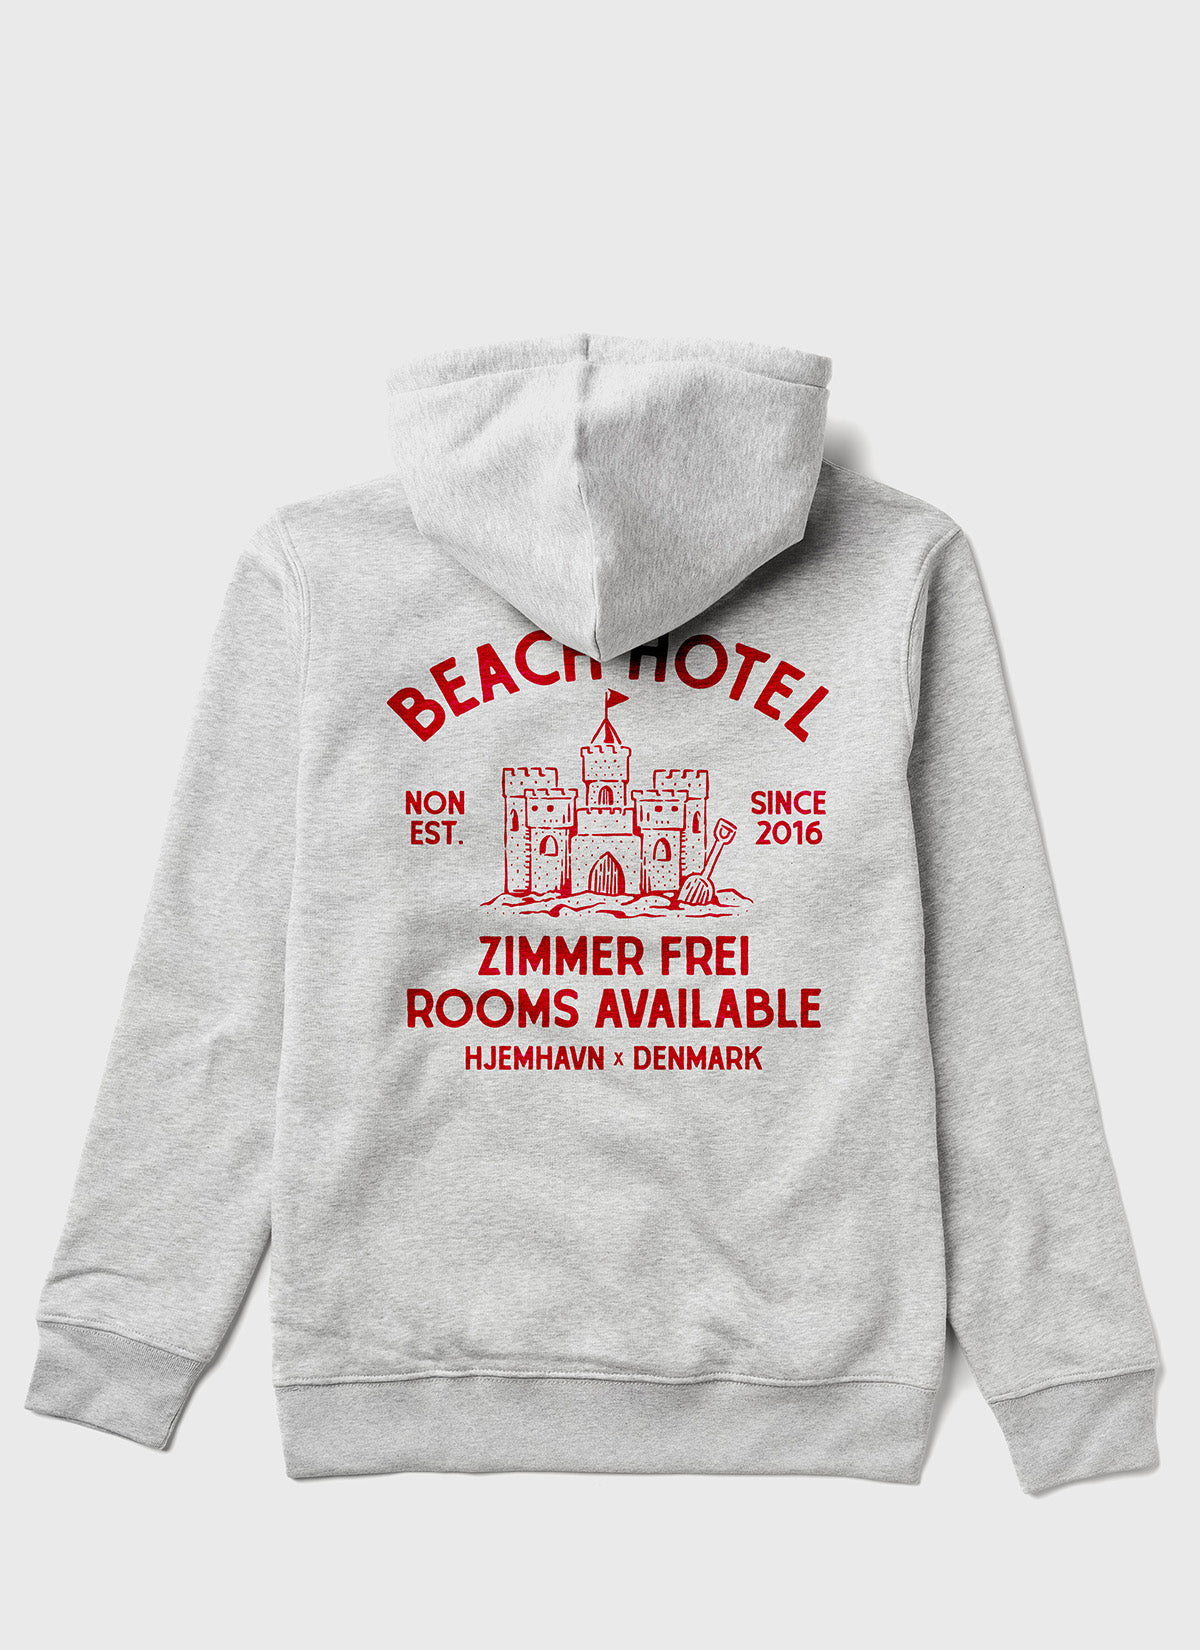 Hoodie "Beach Hotel"